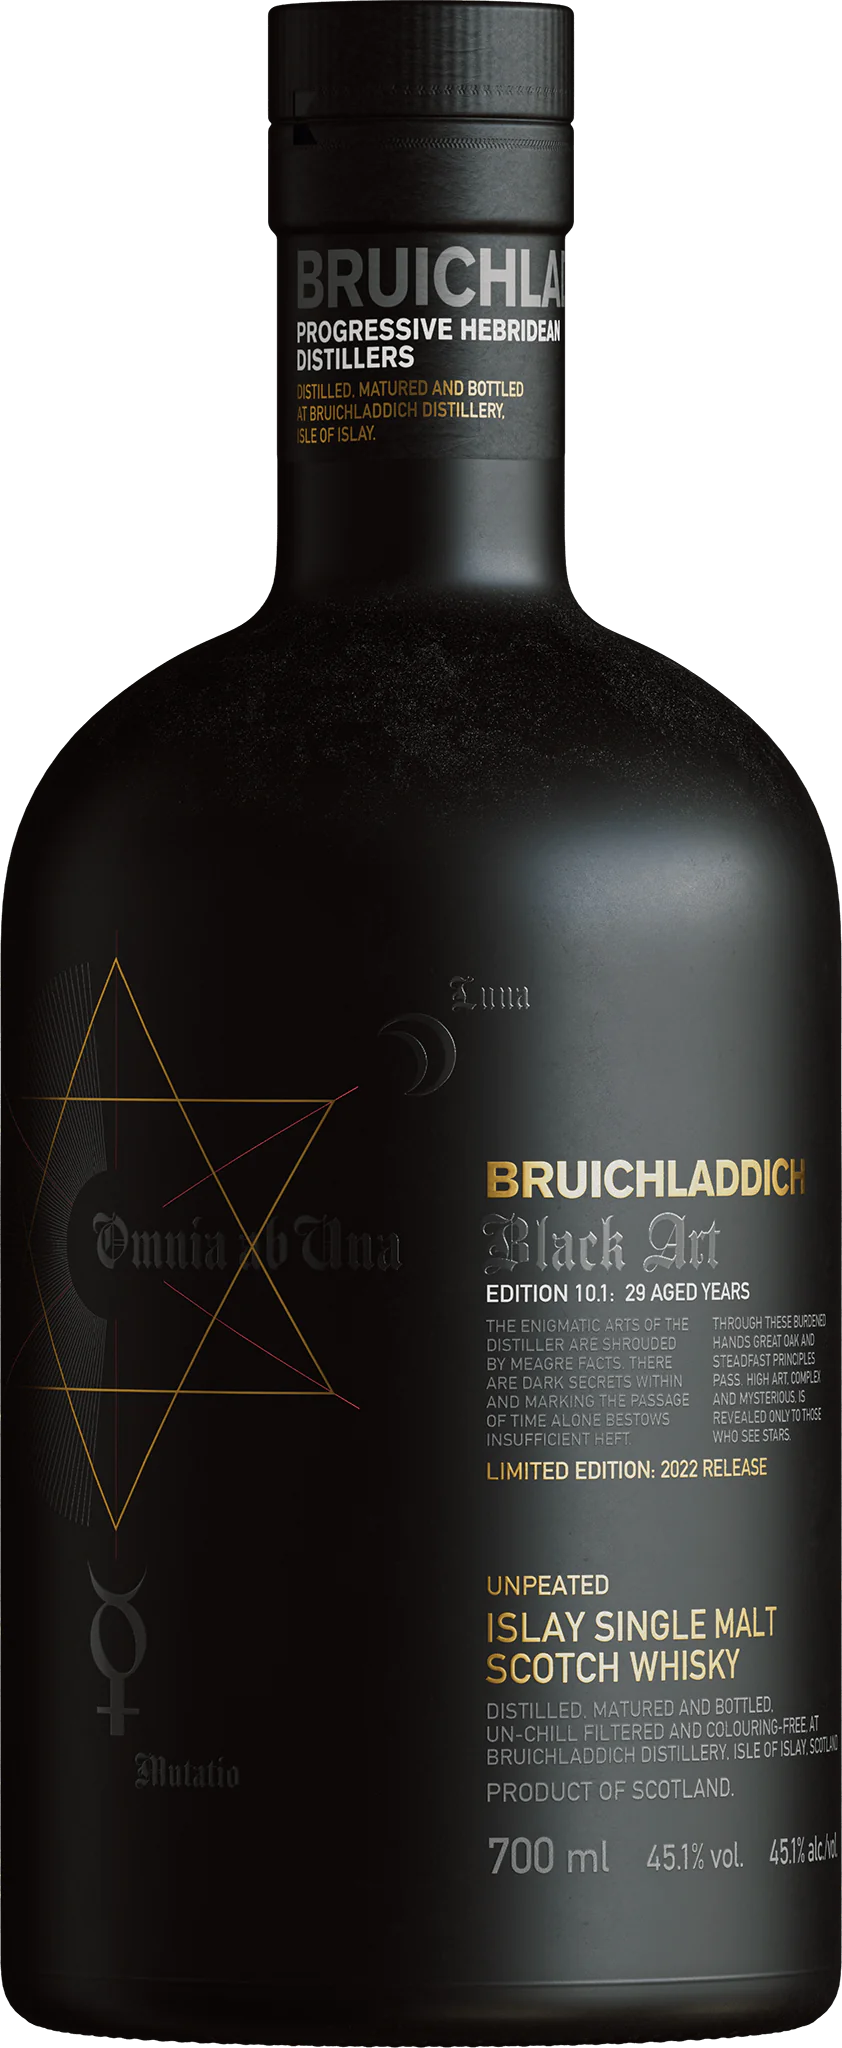 Bruichladdich Islay Single Malt Scotch Whisky Aged 29 Years Black Art Edition 10.1 750 ML